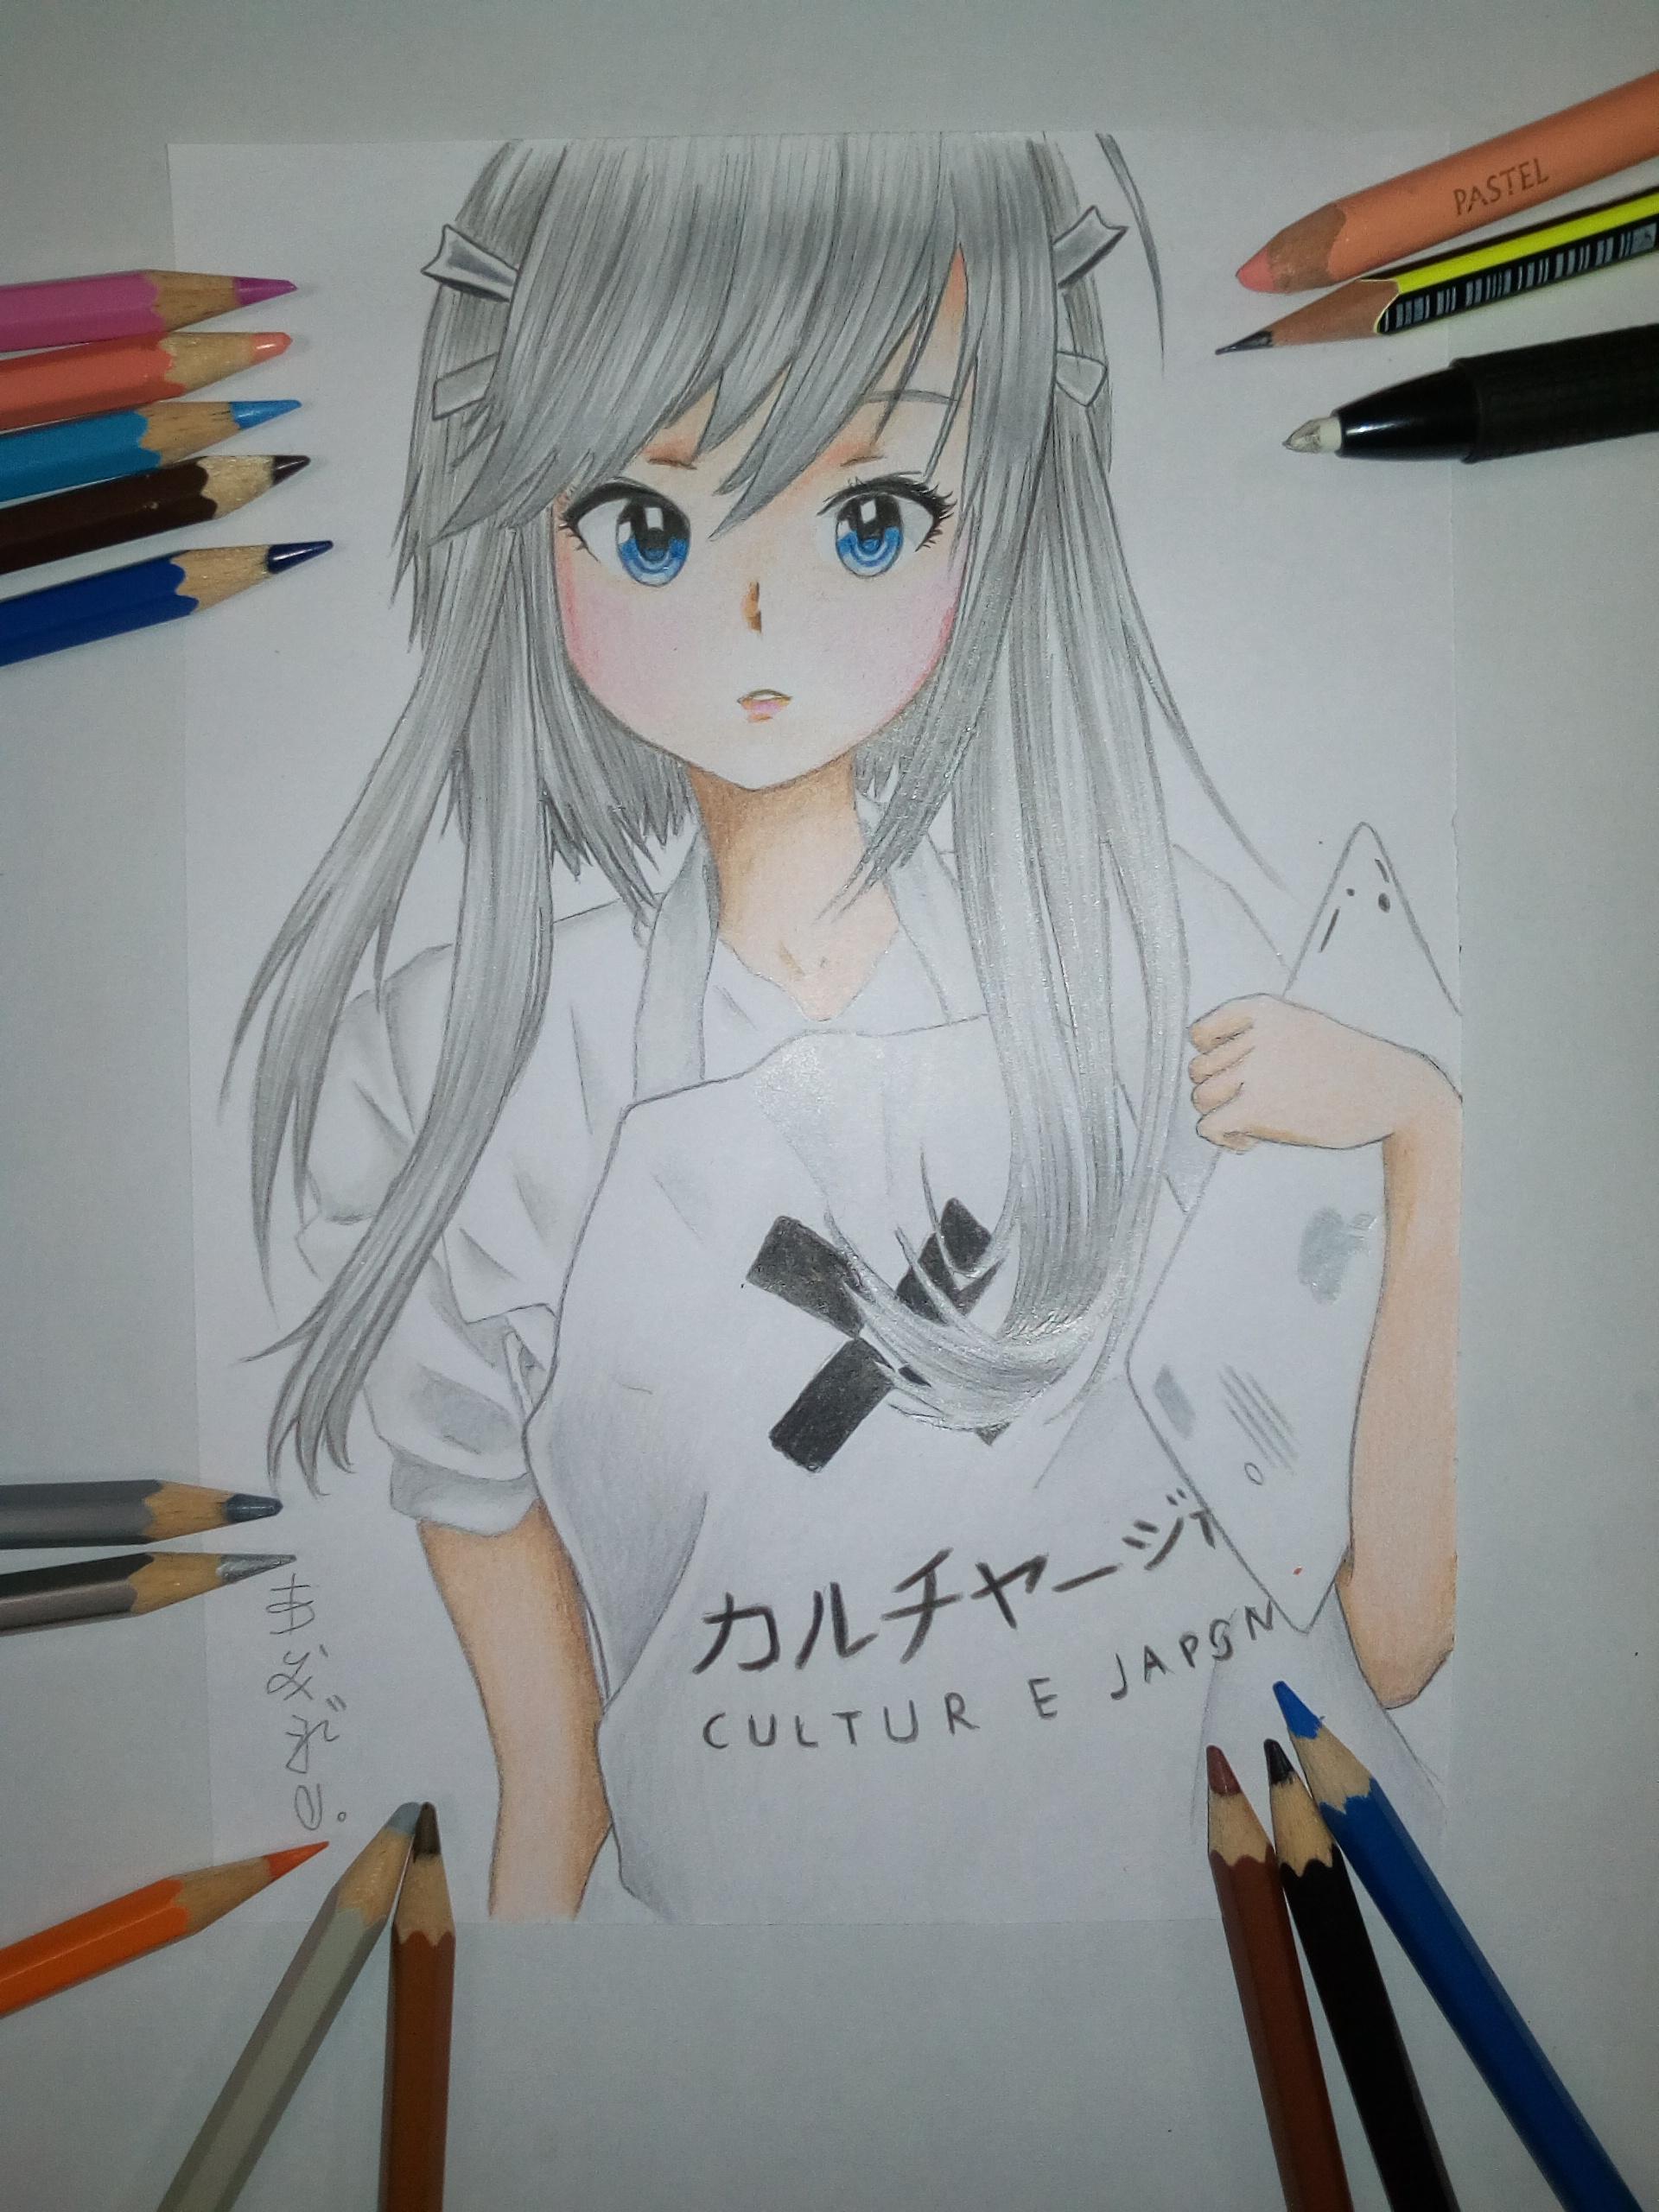 نقاشی دختر با مداد رنگی ساده